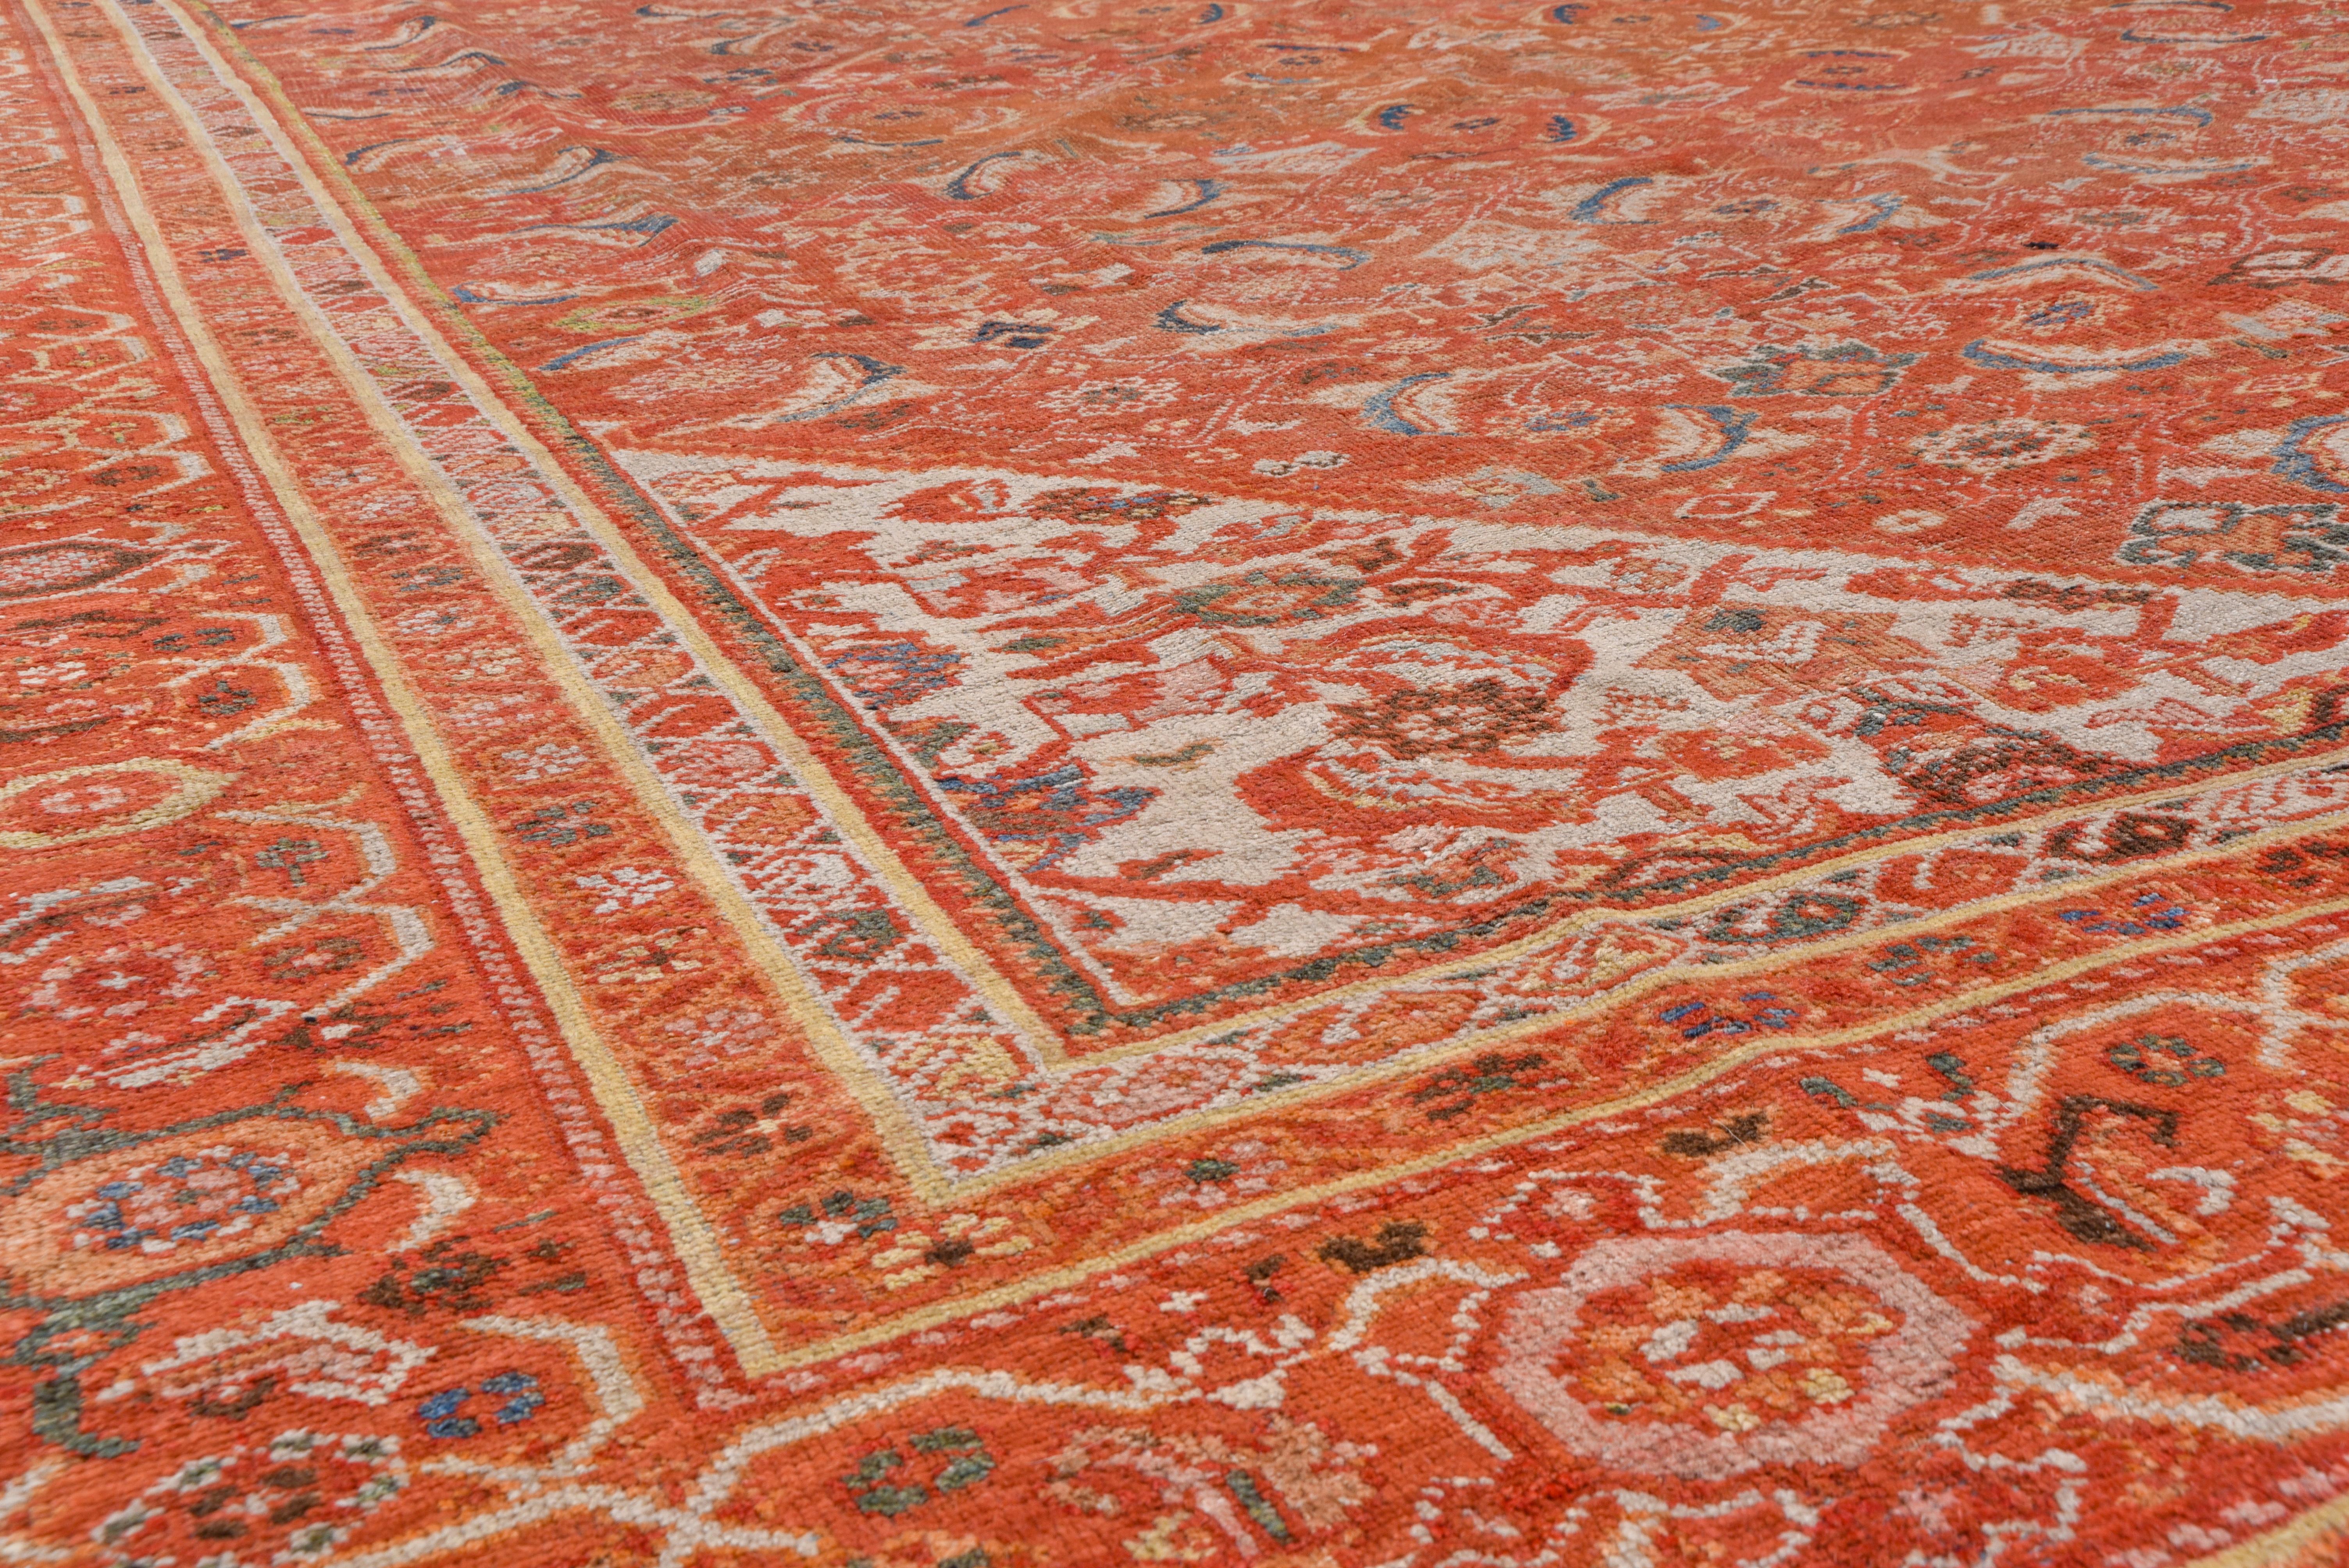 Rustic Orange Antique Persian Mahal Carpet, circa 1930s